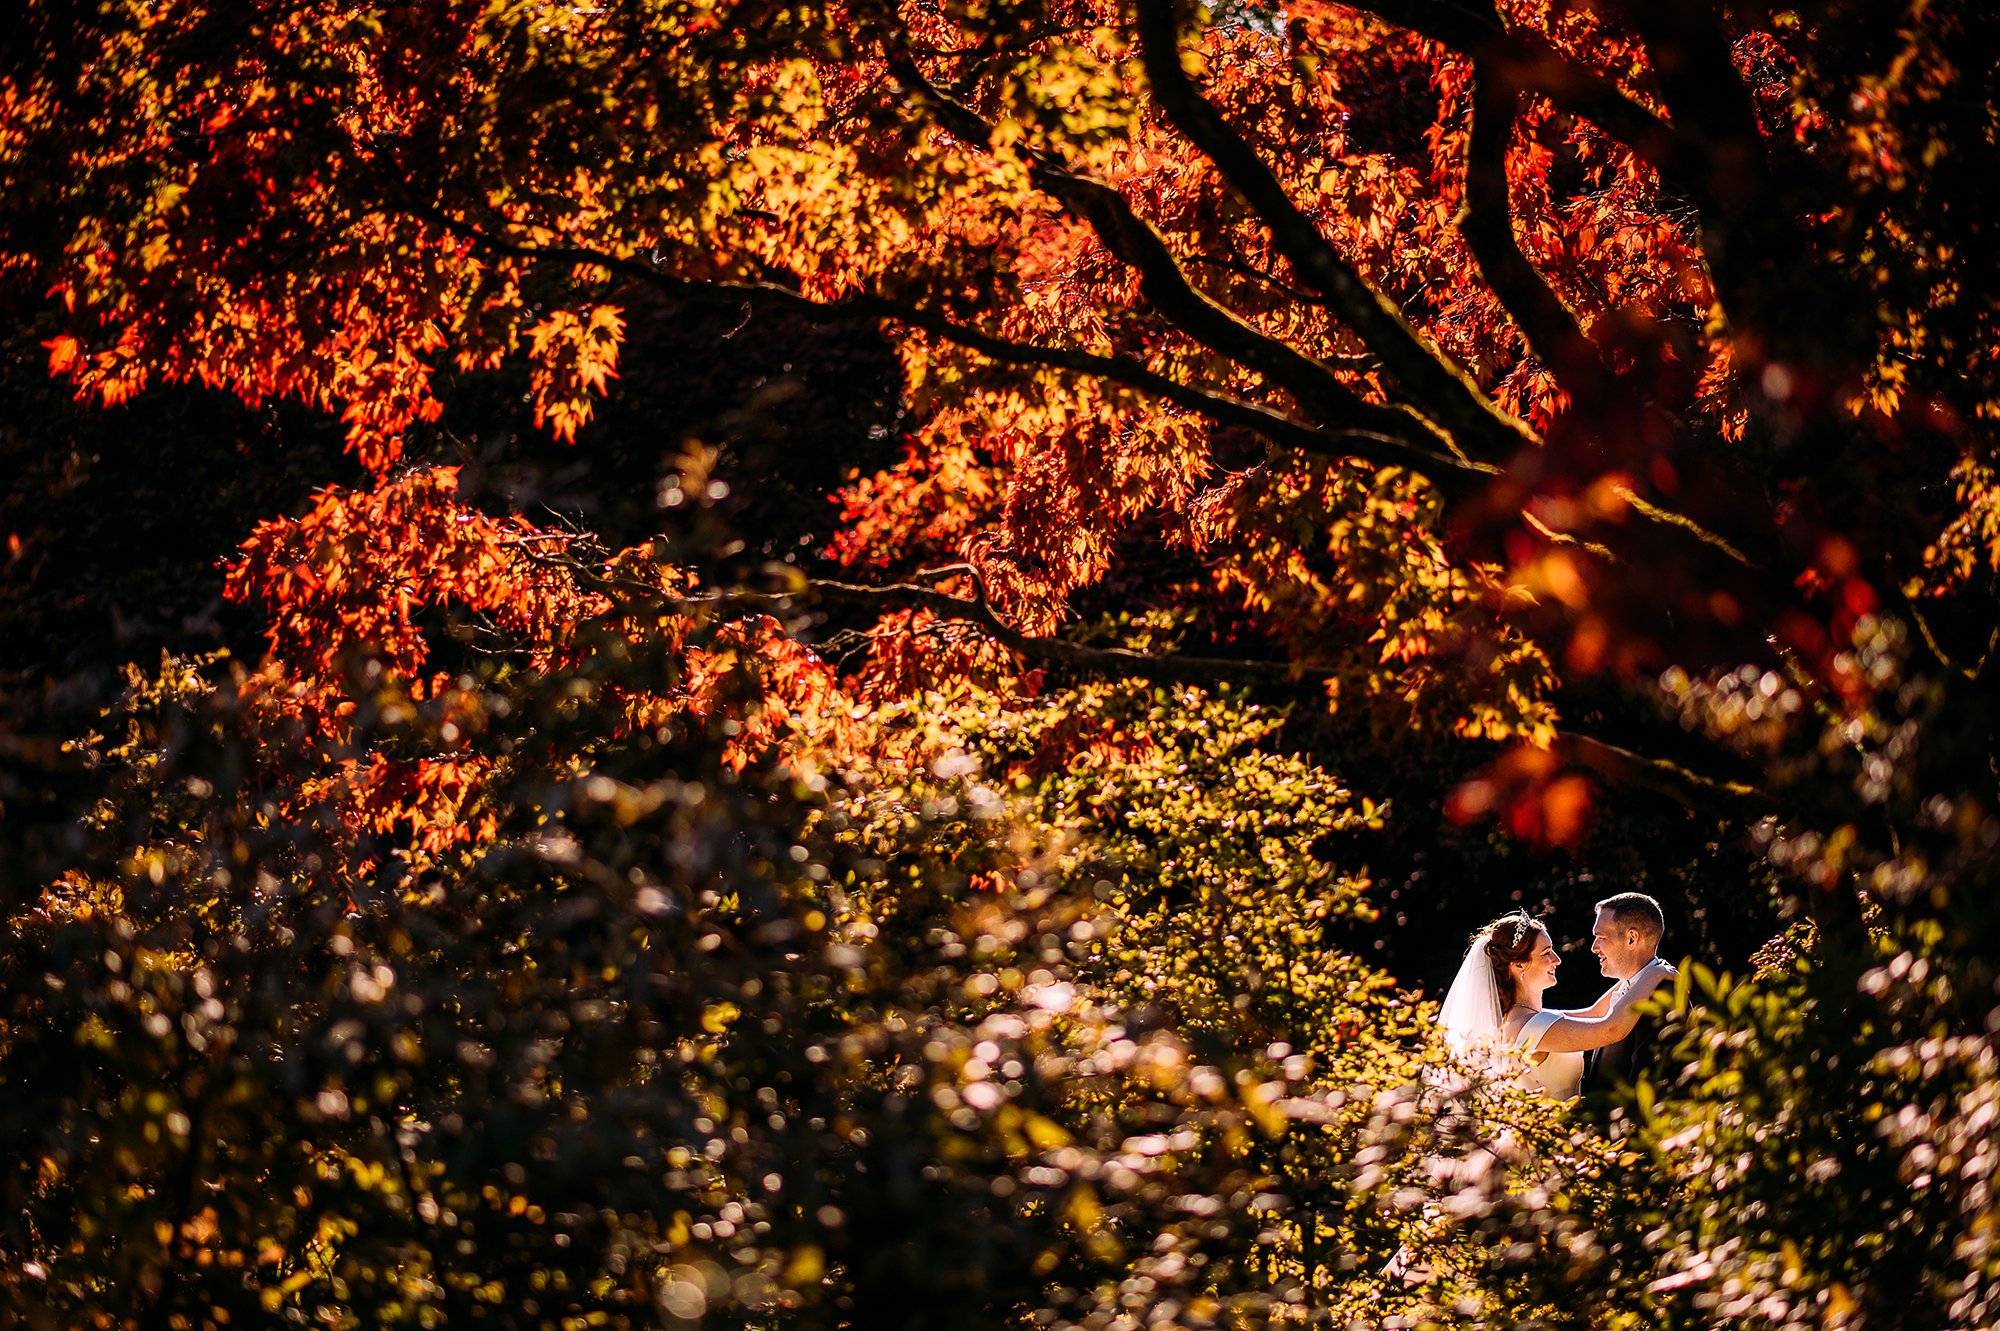  golden hour couple portrait shot through colourful leaves. 